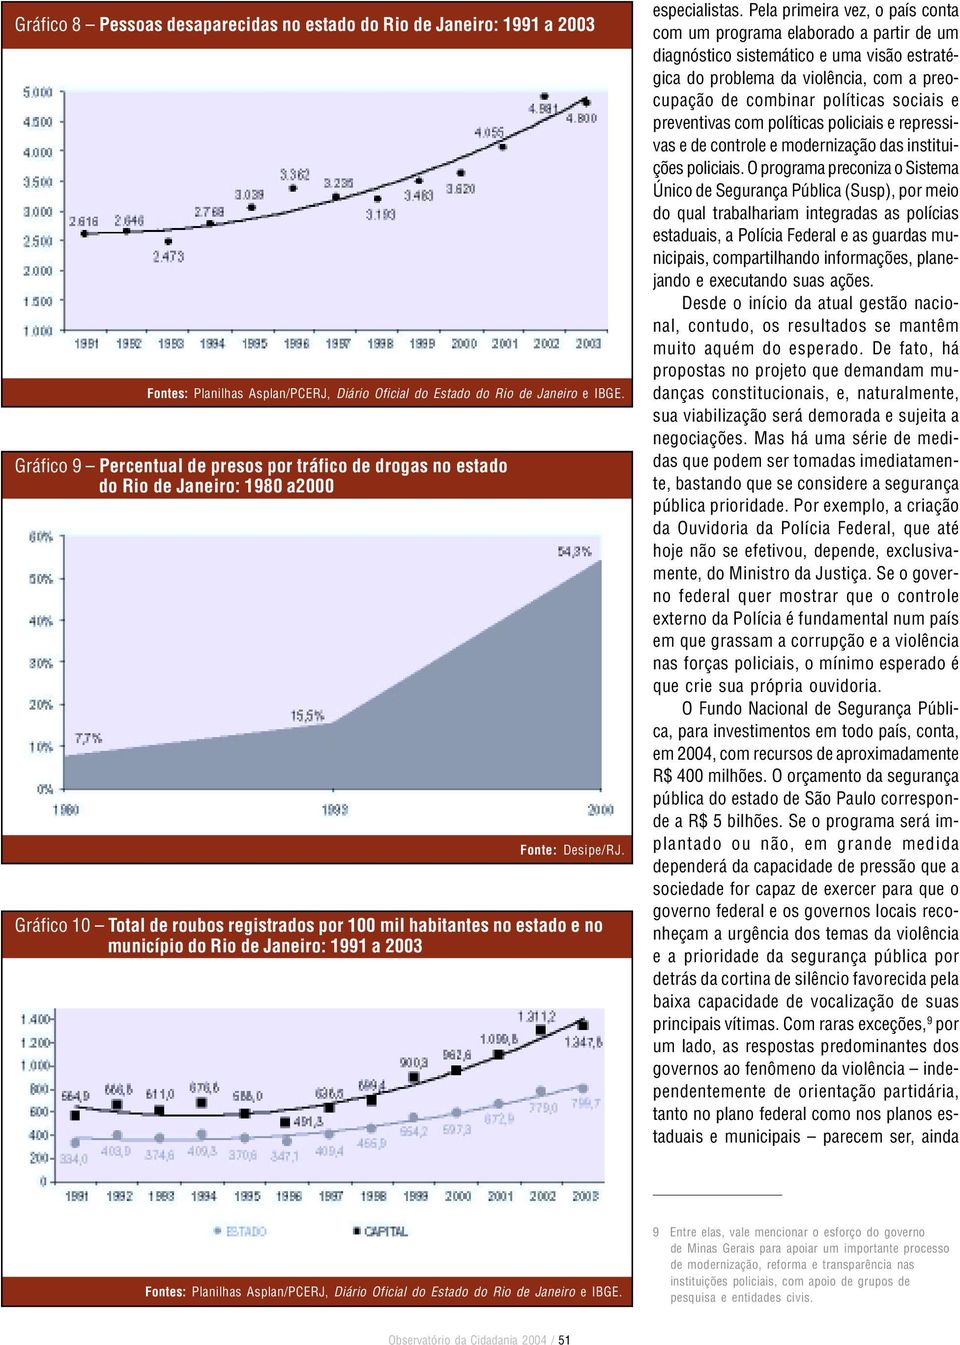 Gráfico 10 Total de roubos registrados por 100 mil habitantes no estado e no município do Rio de Janeiro: 1991 a 2003 especialistas.